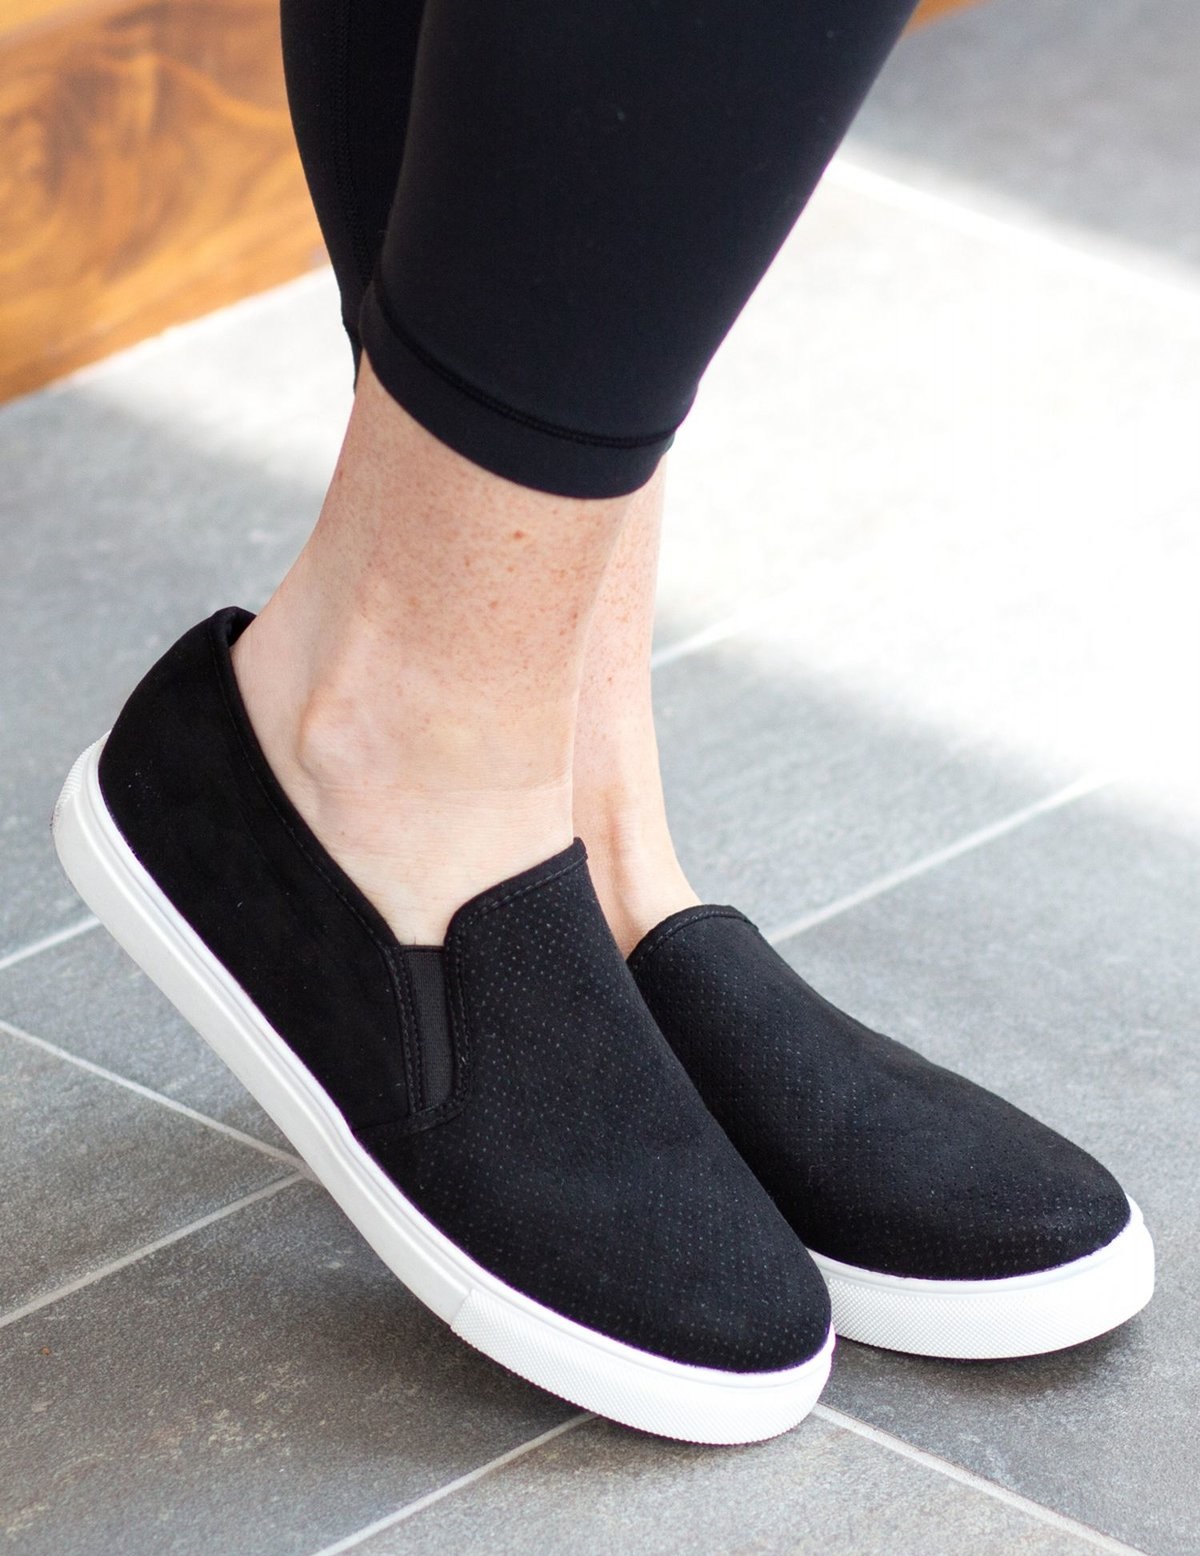 Обувь с черной подошвой. Слипоны (Slip-on) обувь 2021. Слипоны Black (черный), 40. Женская обувь Патрол чёрные с белой подошвой.